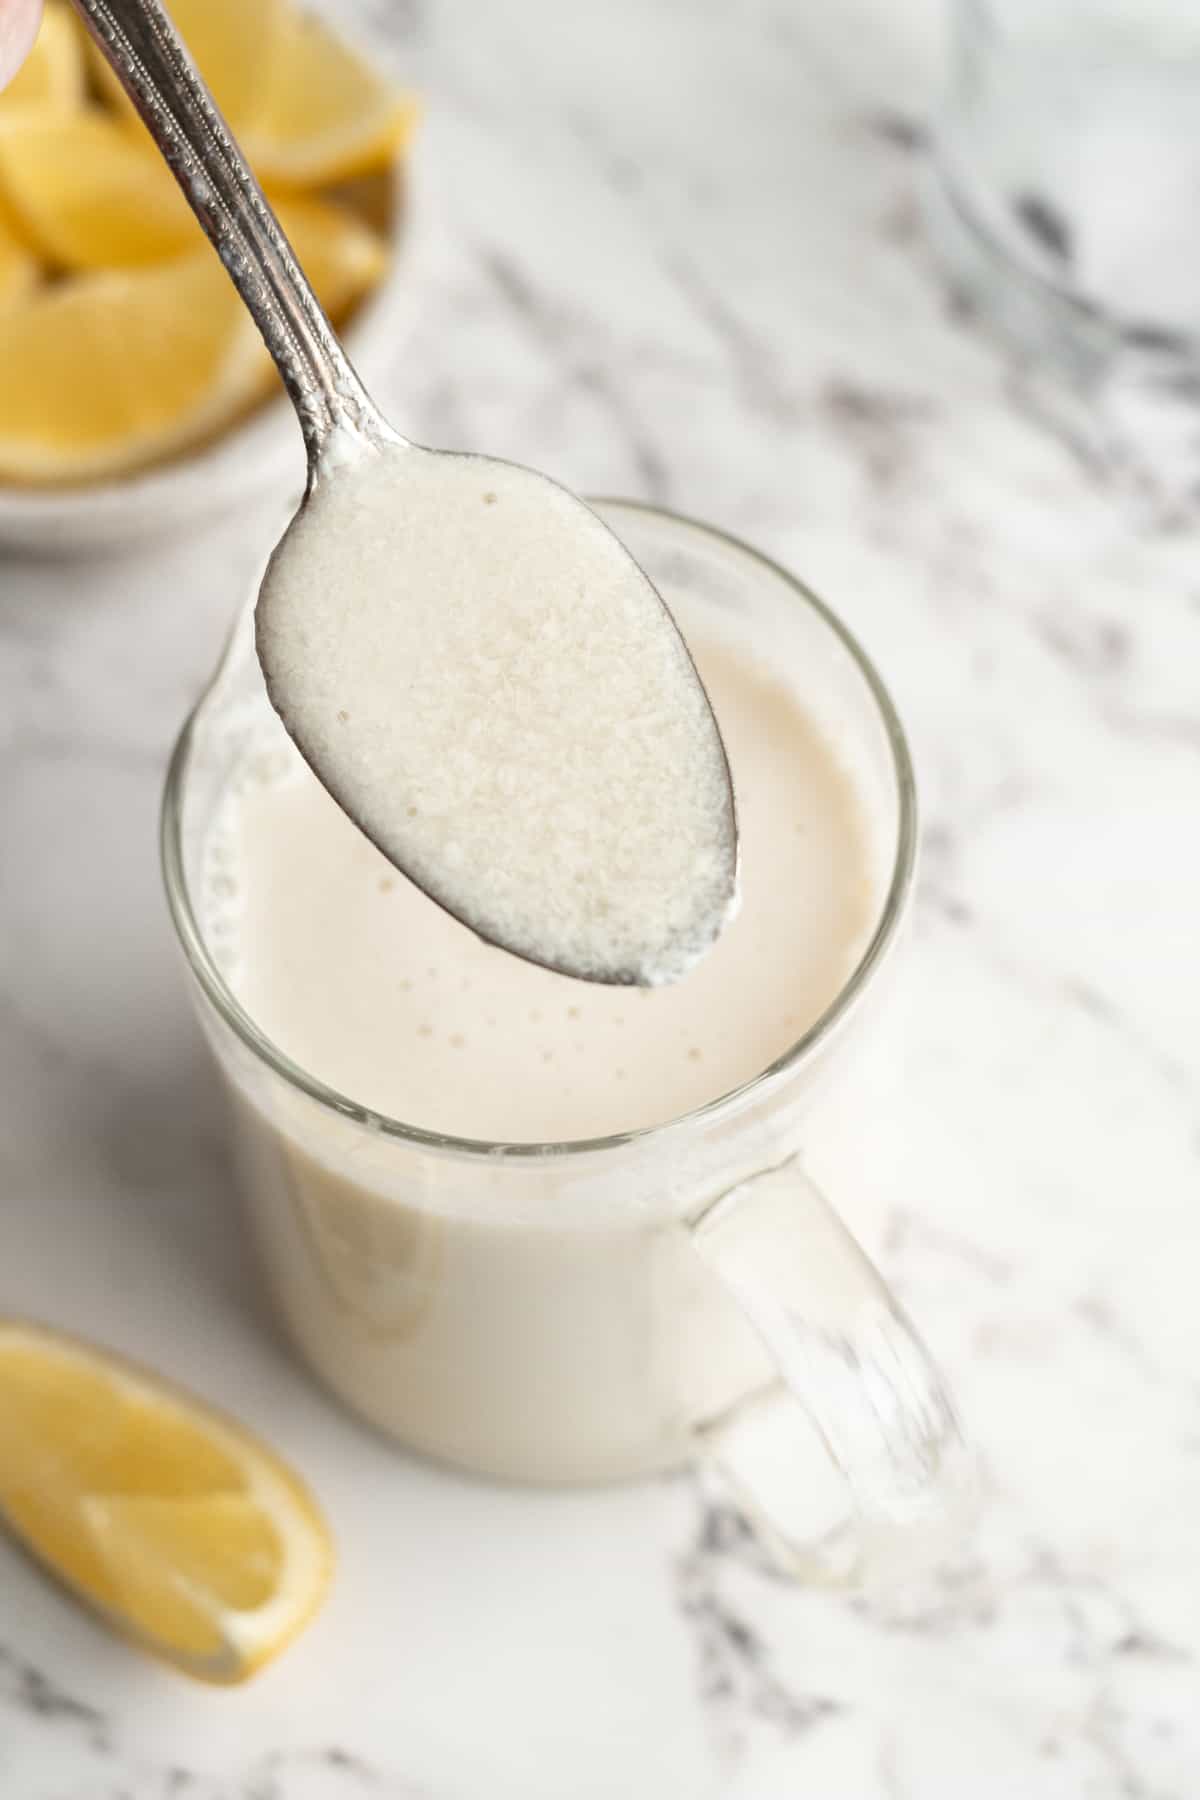 Spoonful of vegan buttermilk held over liquid measuring cup